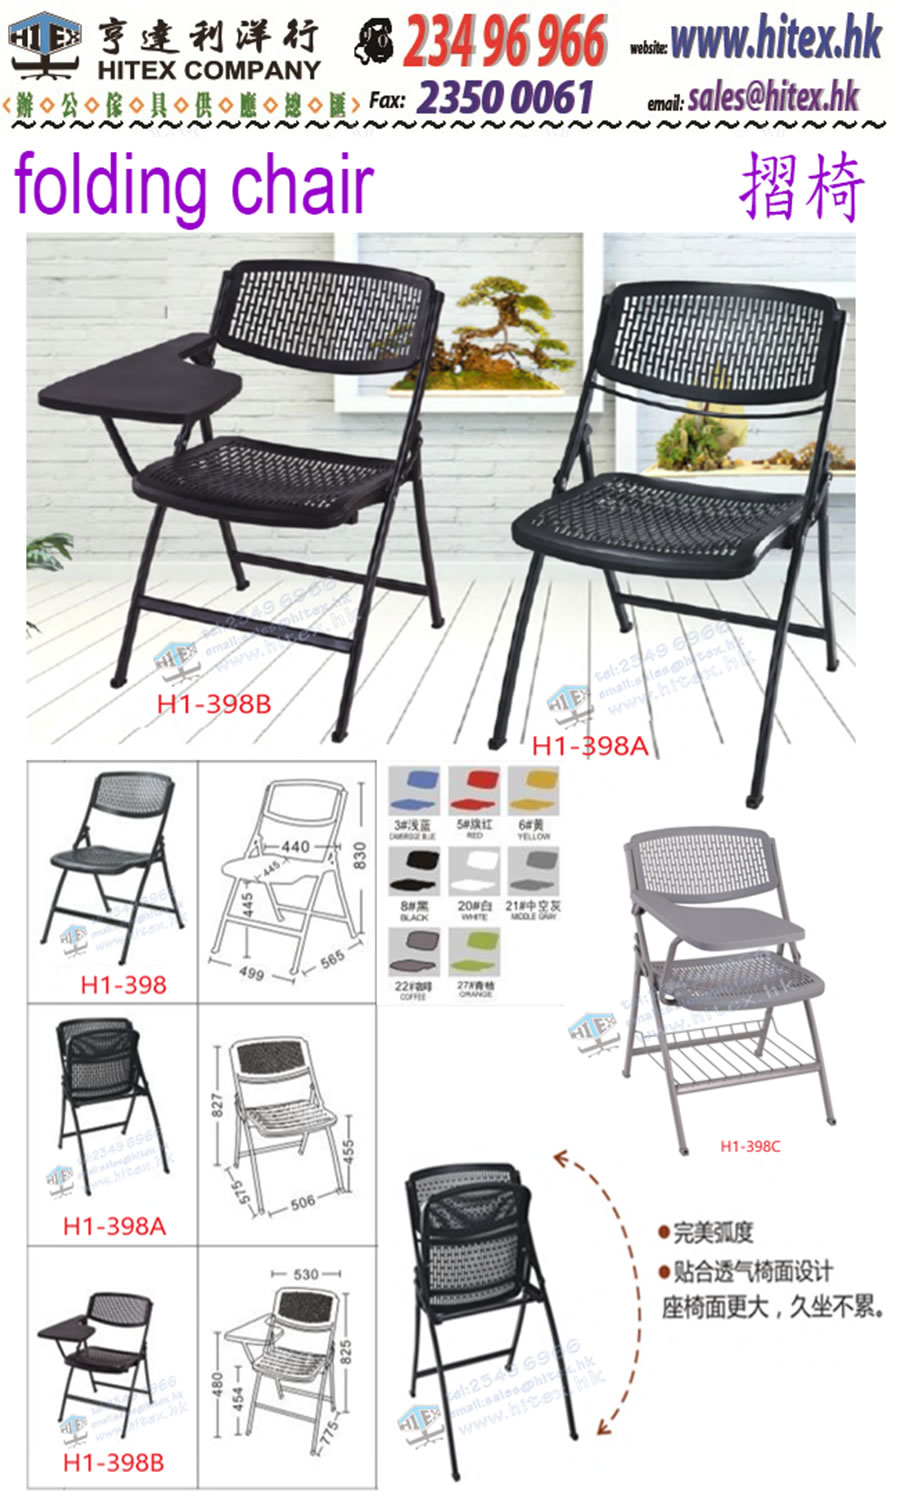 folding-chair-h1-398a.jpg